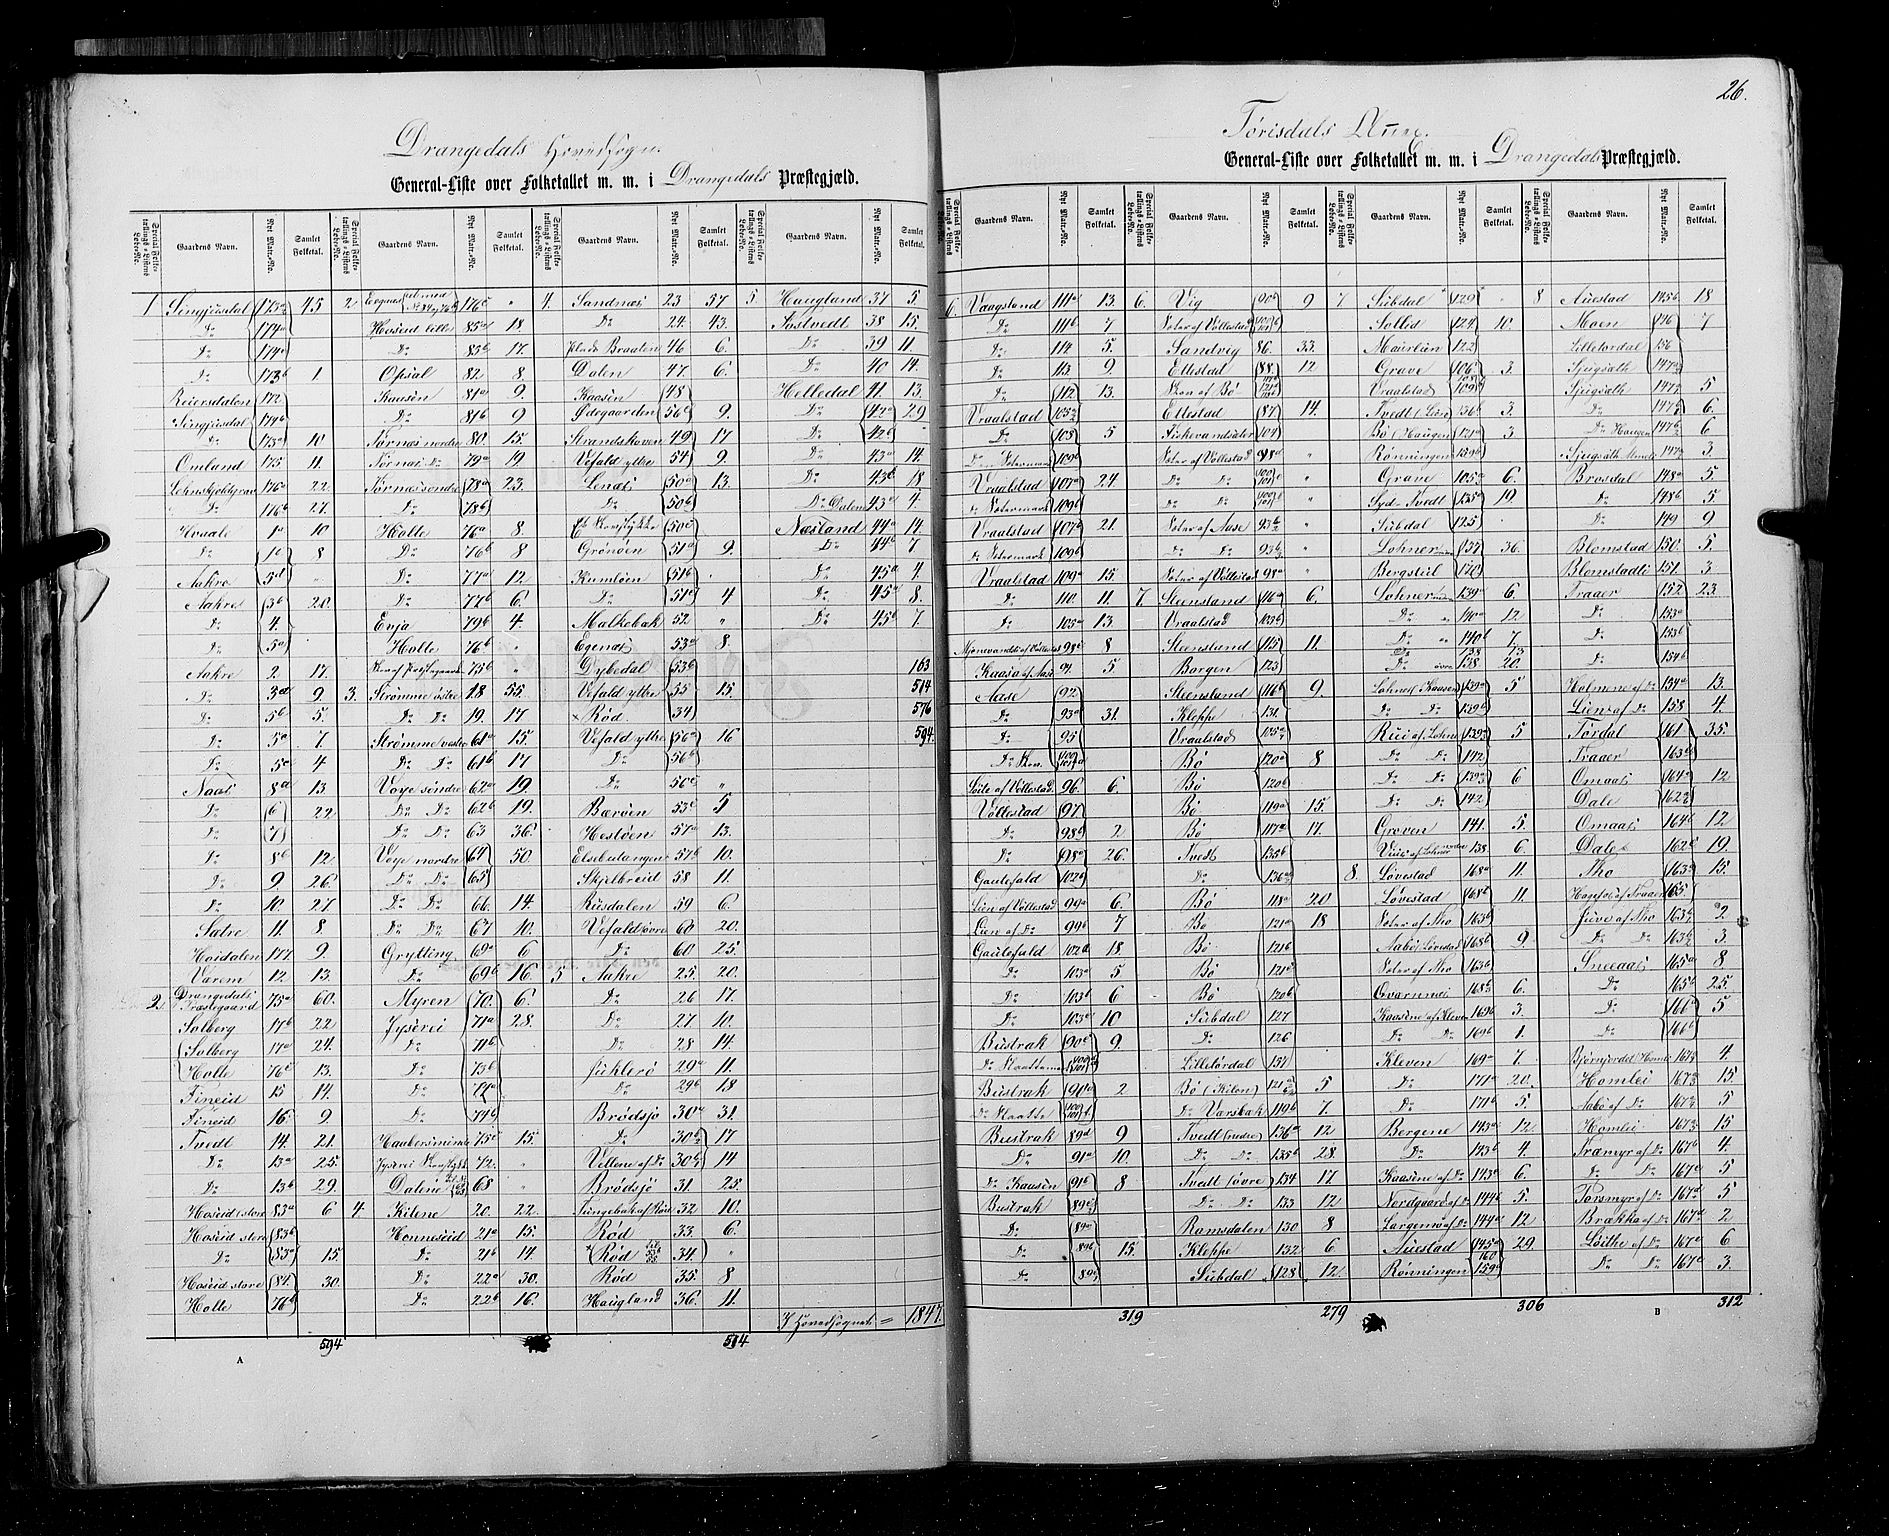 RA, Census 1855, vol. 3: Bratsberg amt, Nedenes amt og Lister og Mandal amt, 1855, p. 26